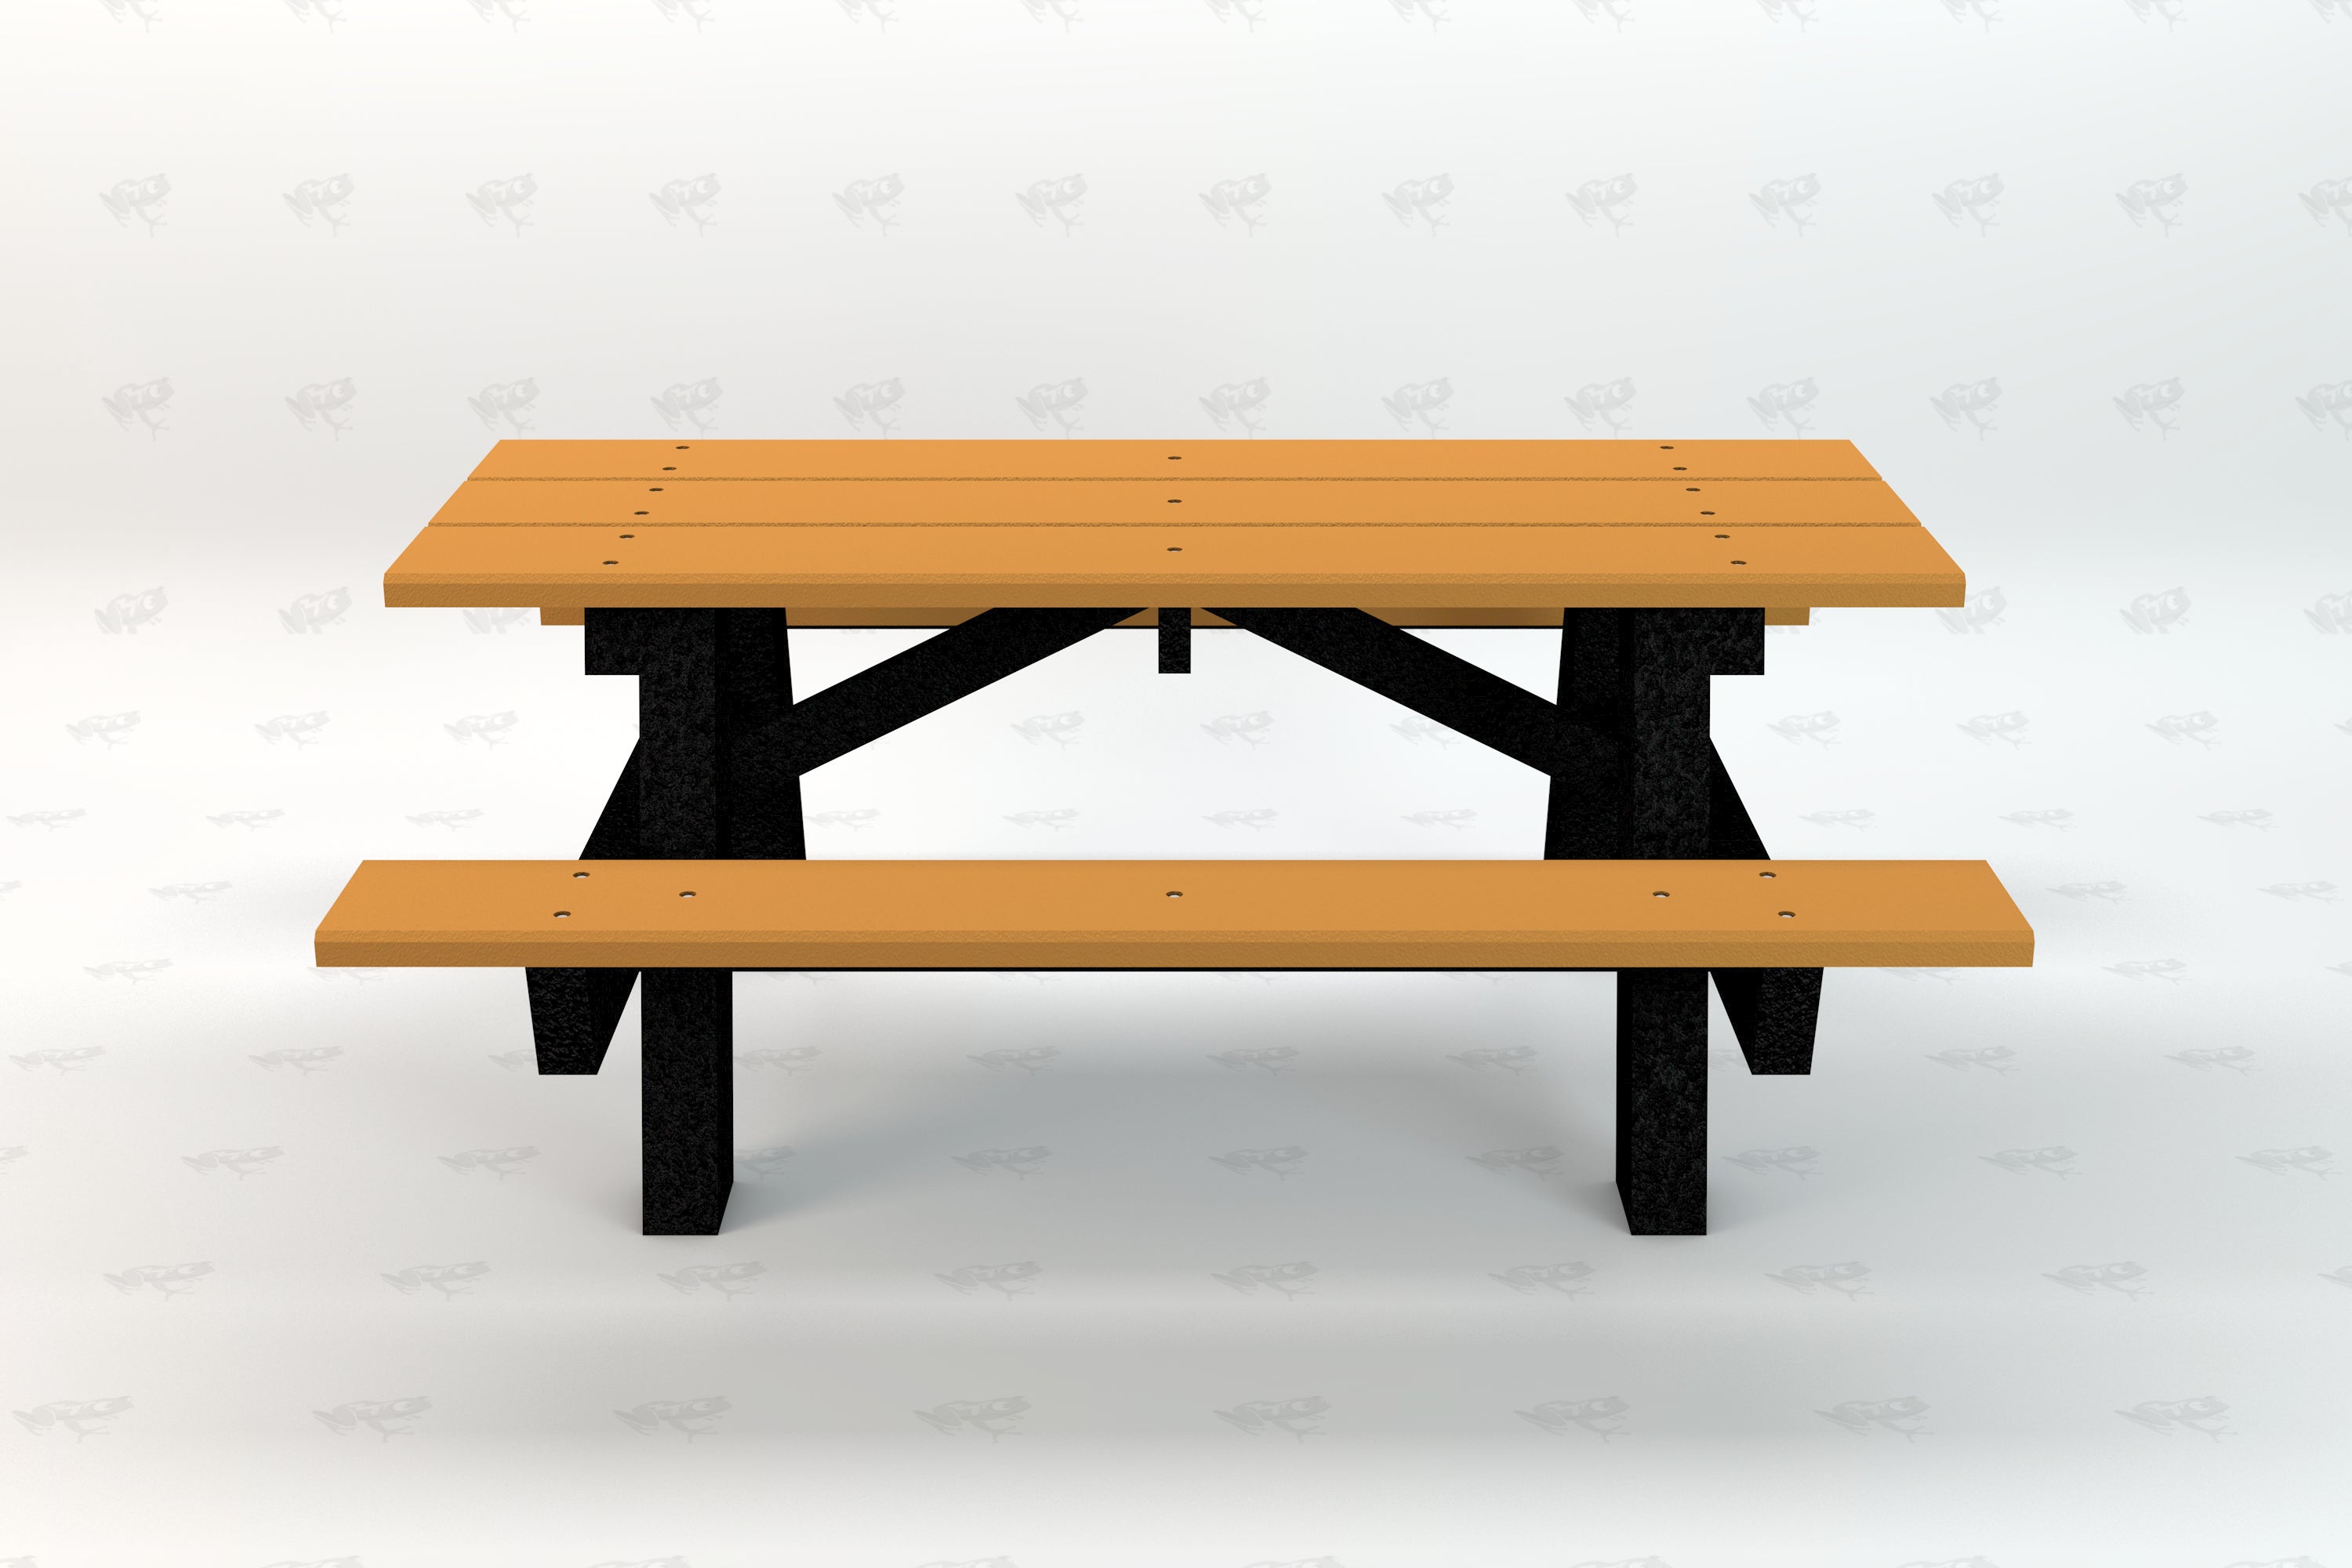 A Frame Table